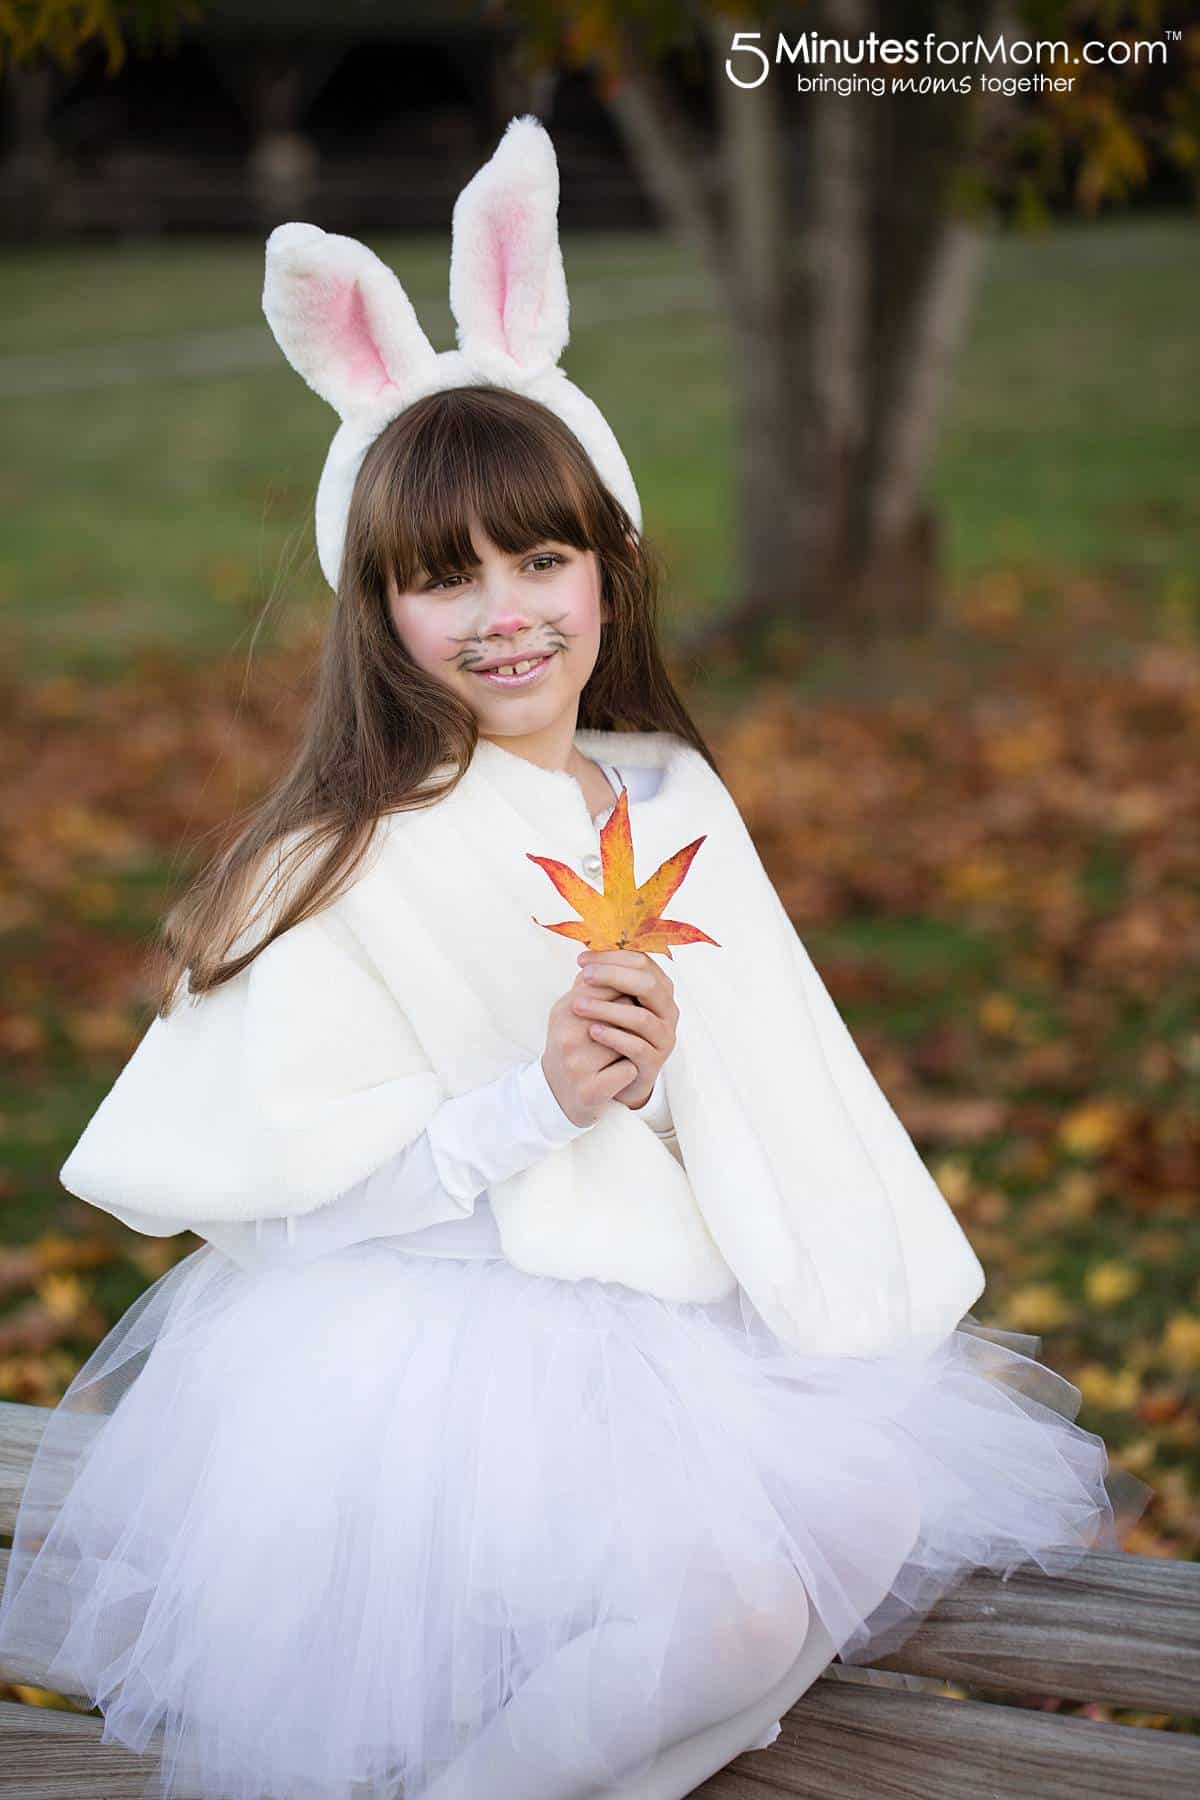 Amazing Bunny Costume DIY Ideas For GirlsBunny Costume DIY Ideas for Kids 